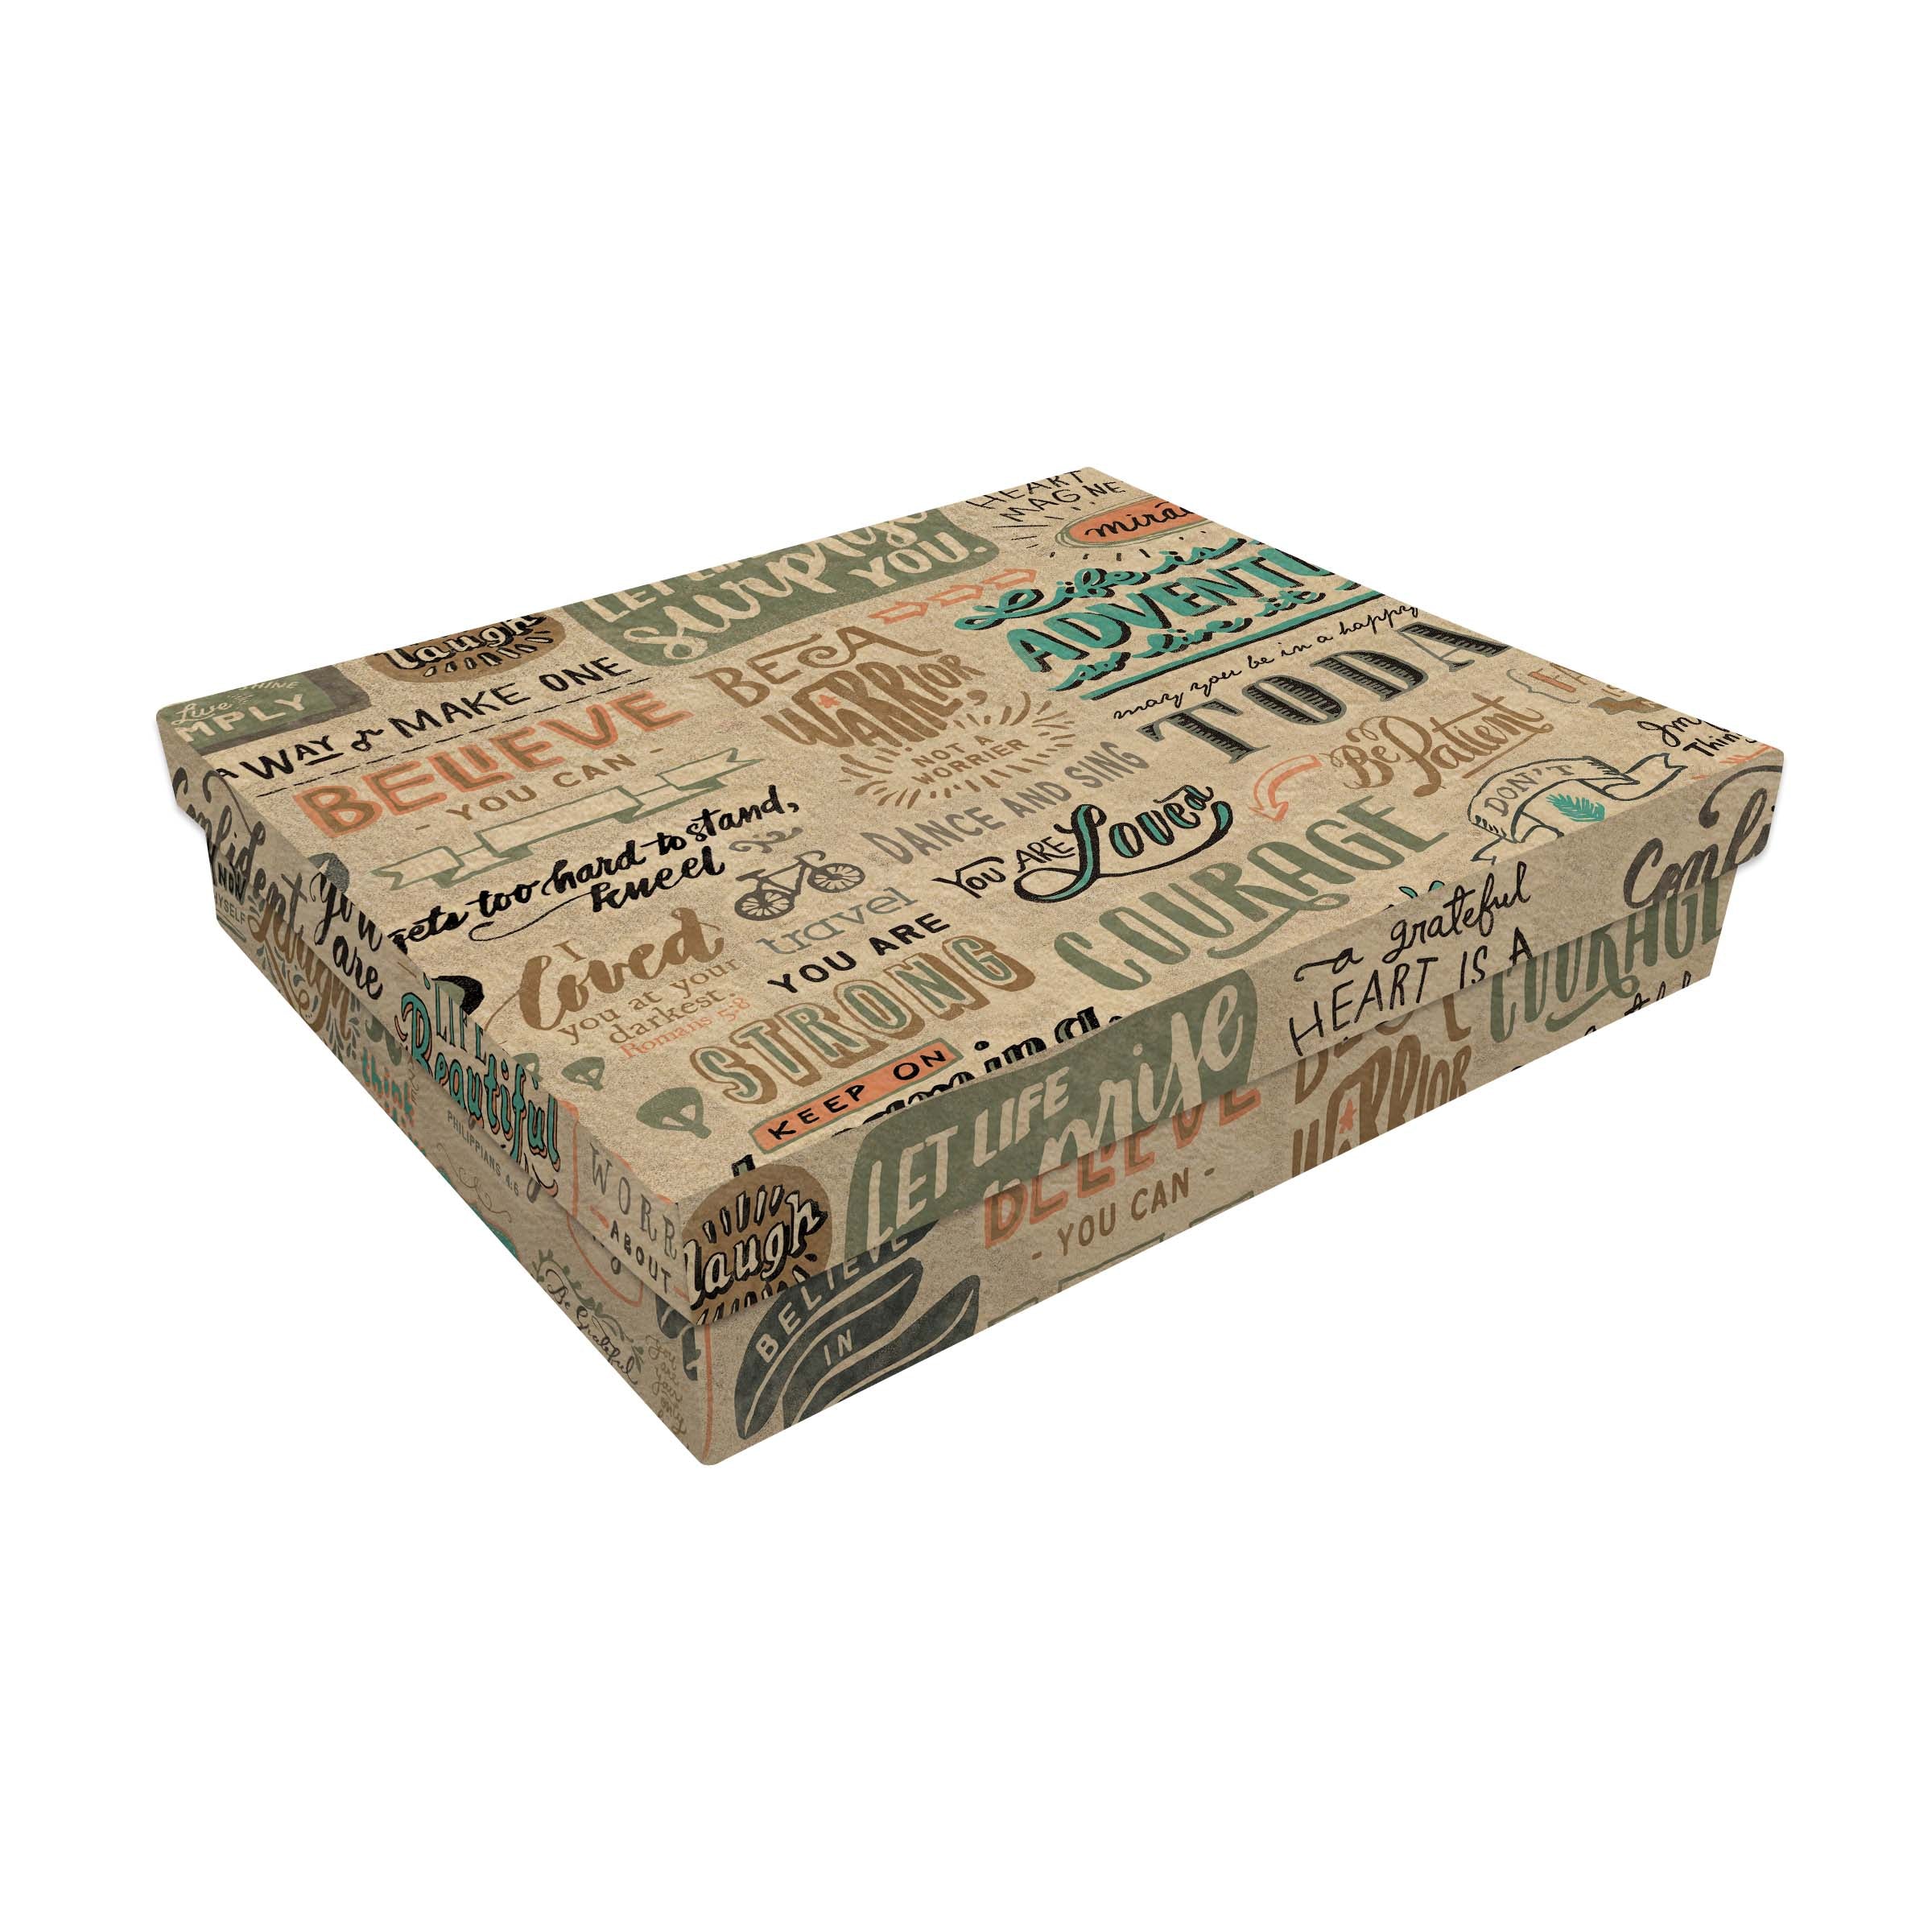 Rectangular Gift Box: 10" x 8.5" x 2"